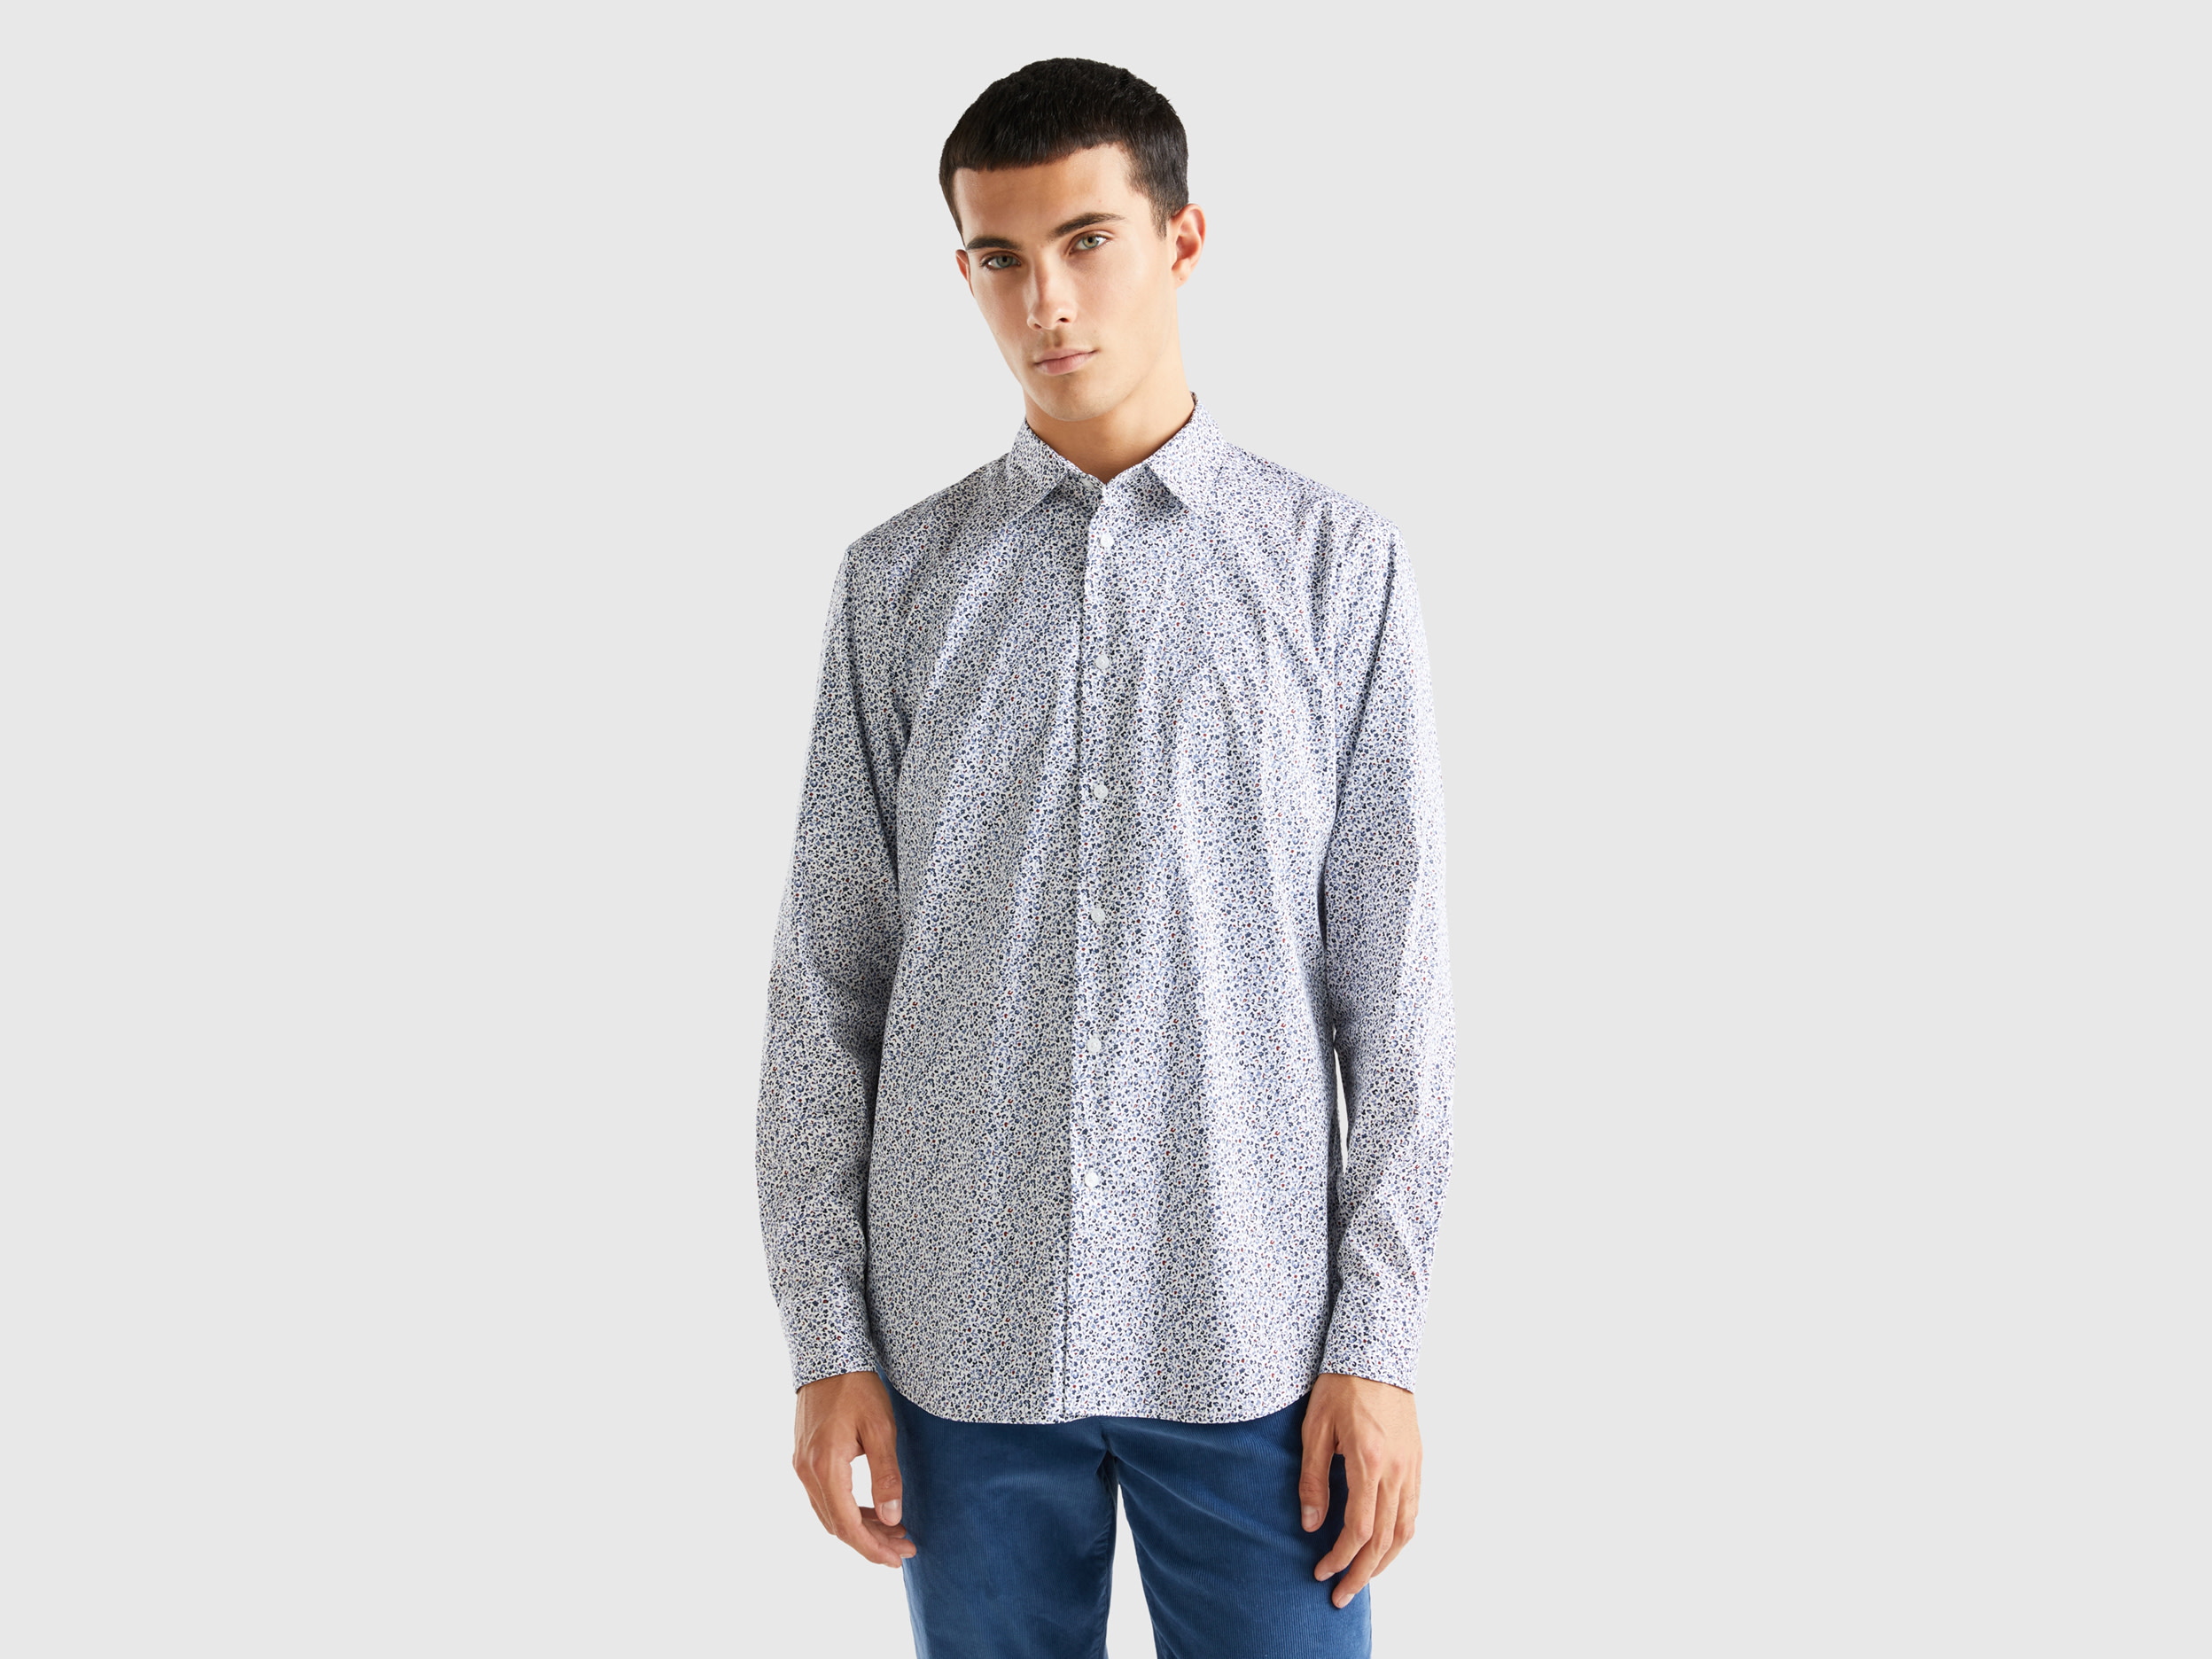 Benetton, Patterned Slim Fit Shirt, size XL, Multi-color, Men